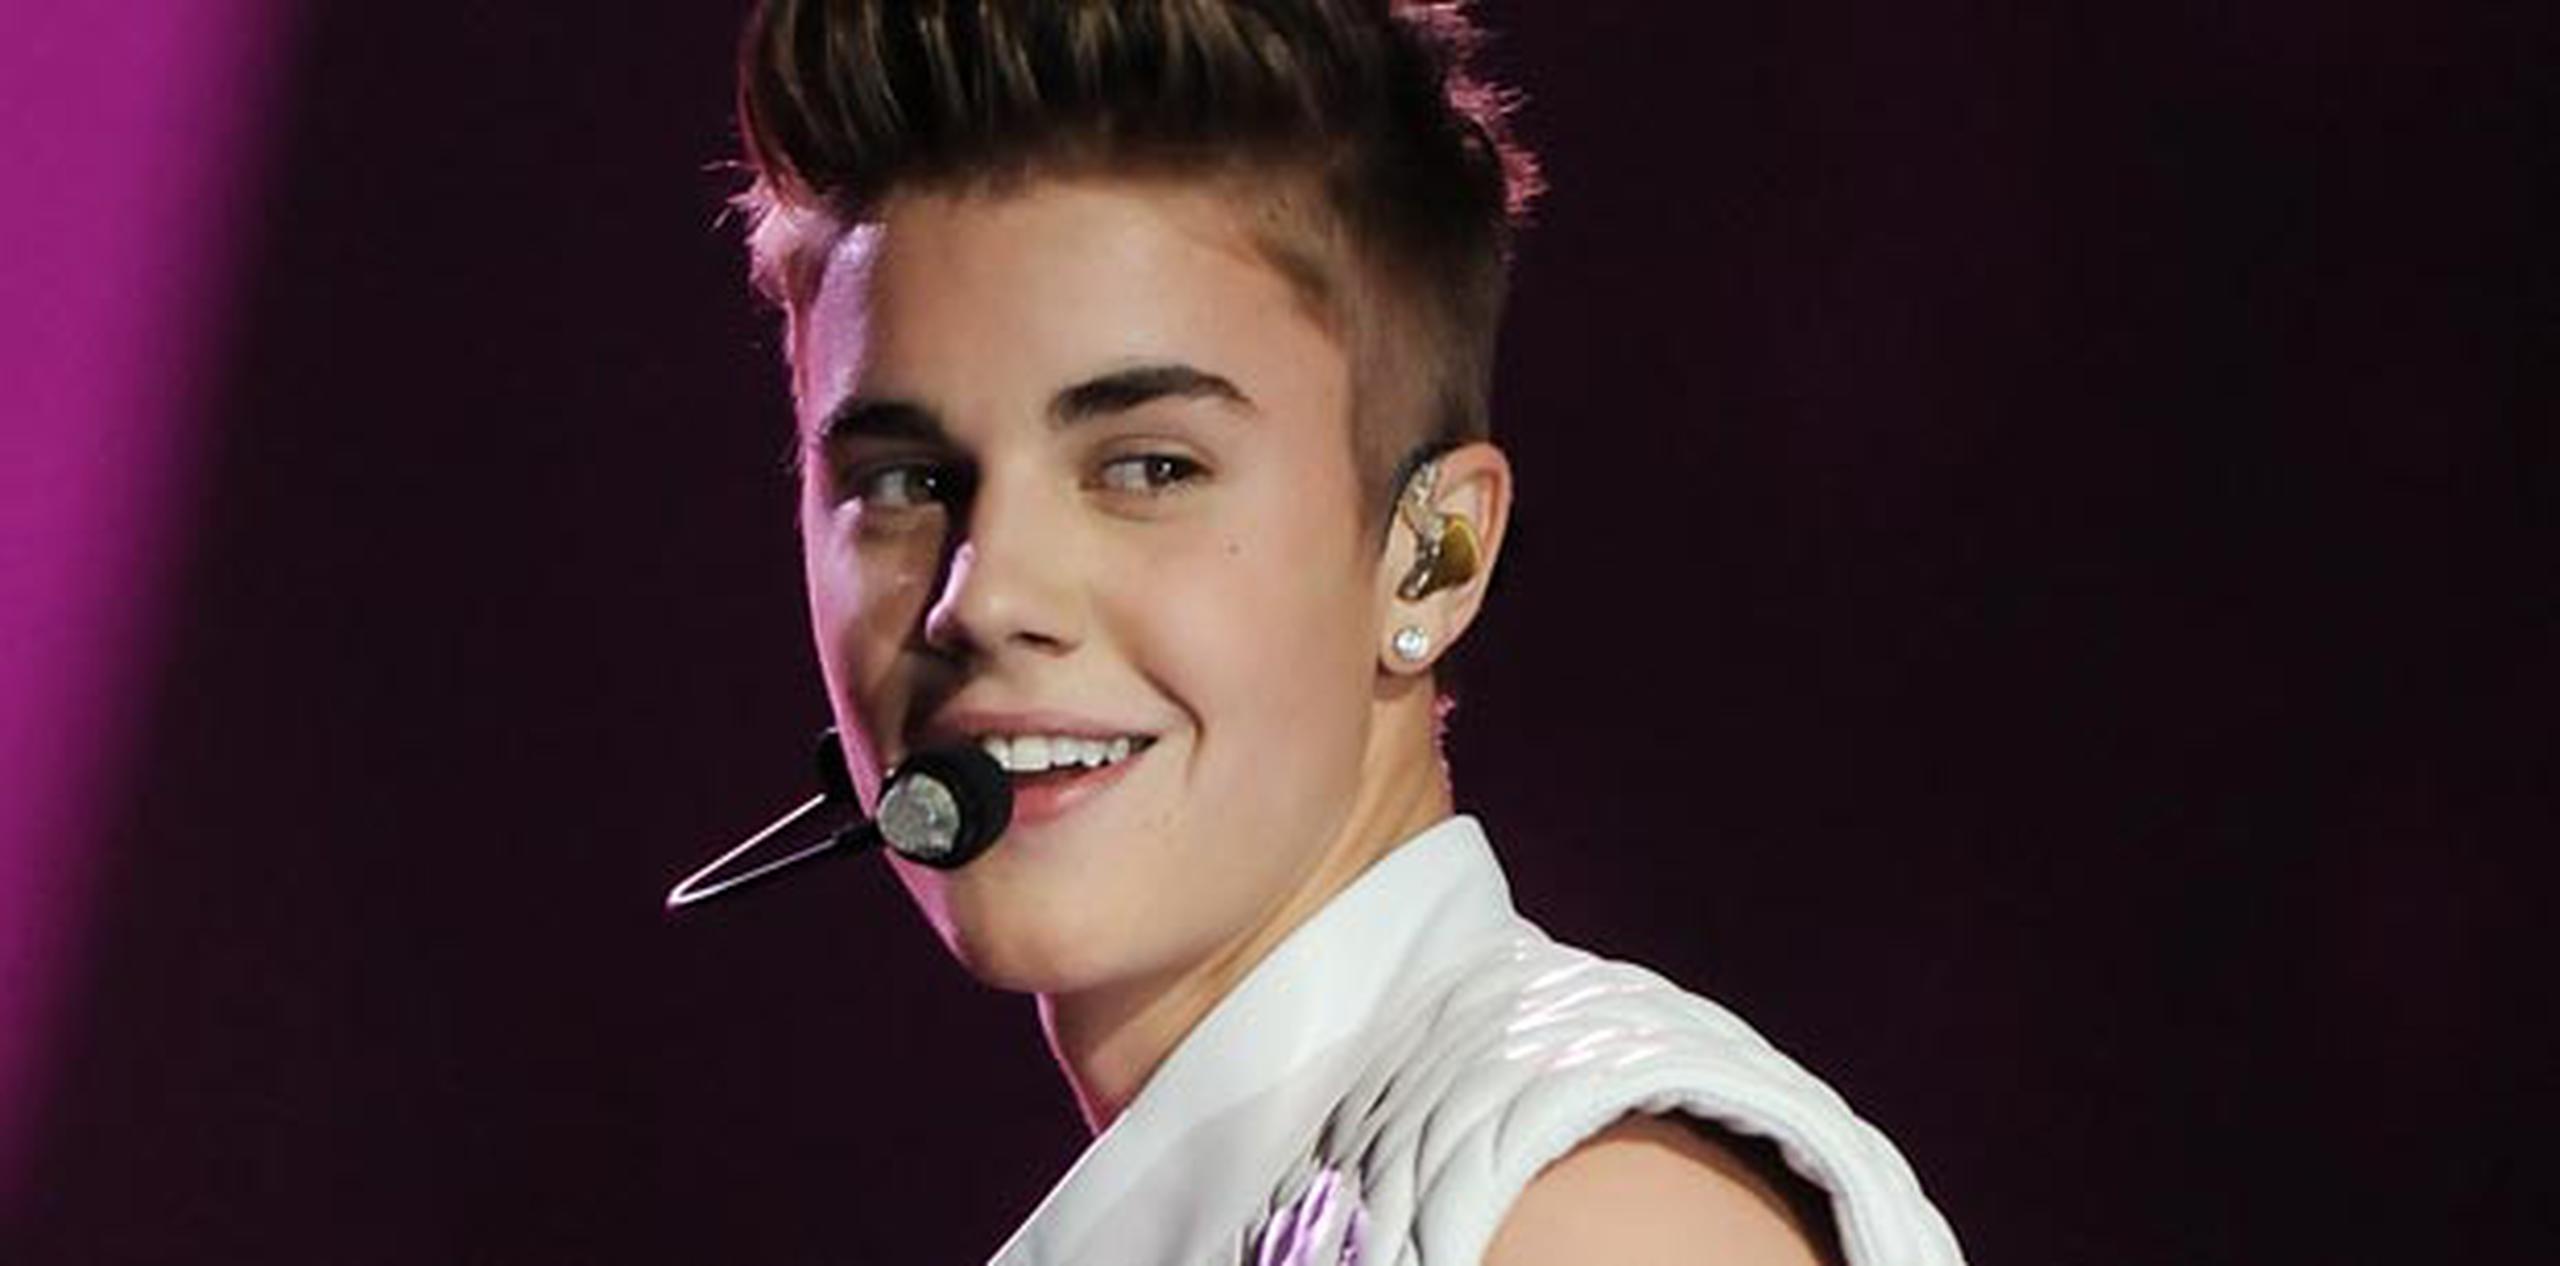 Bieber ha pedido disculpas por comentarios insultantes, pero esto no lo ha redimido de seguir en la lista de escándalos. (Archivo)